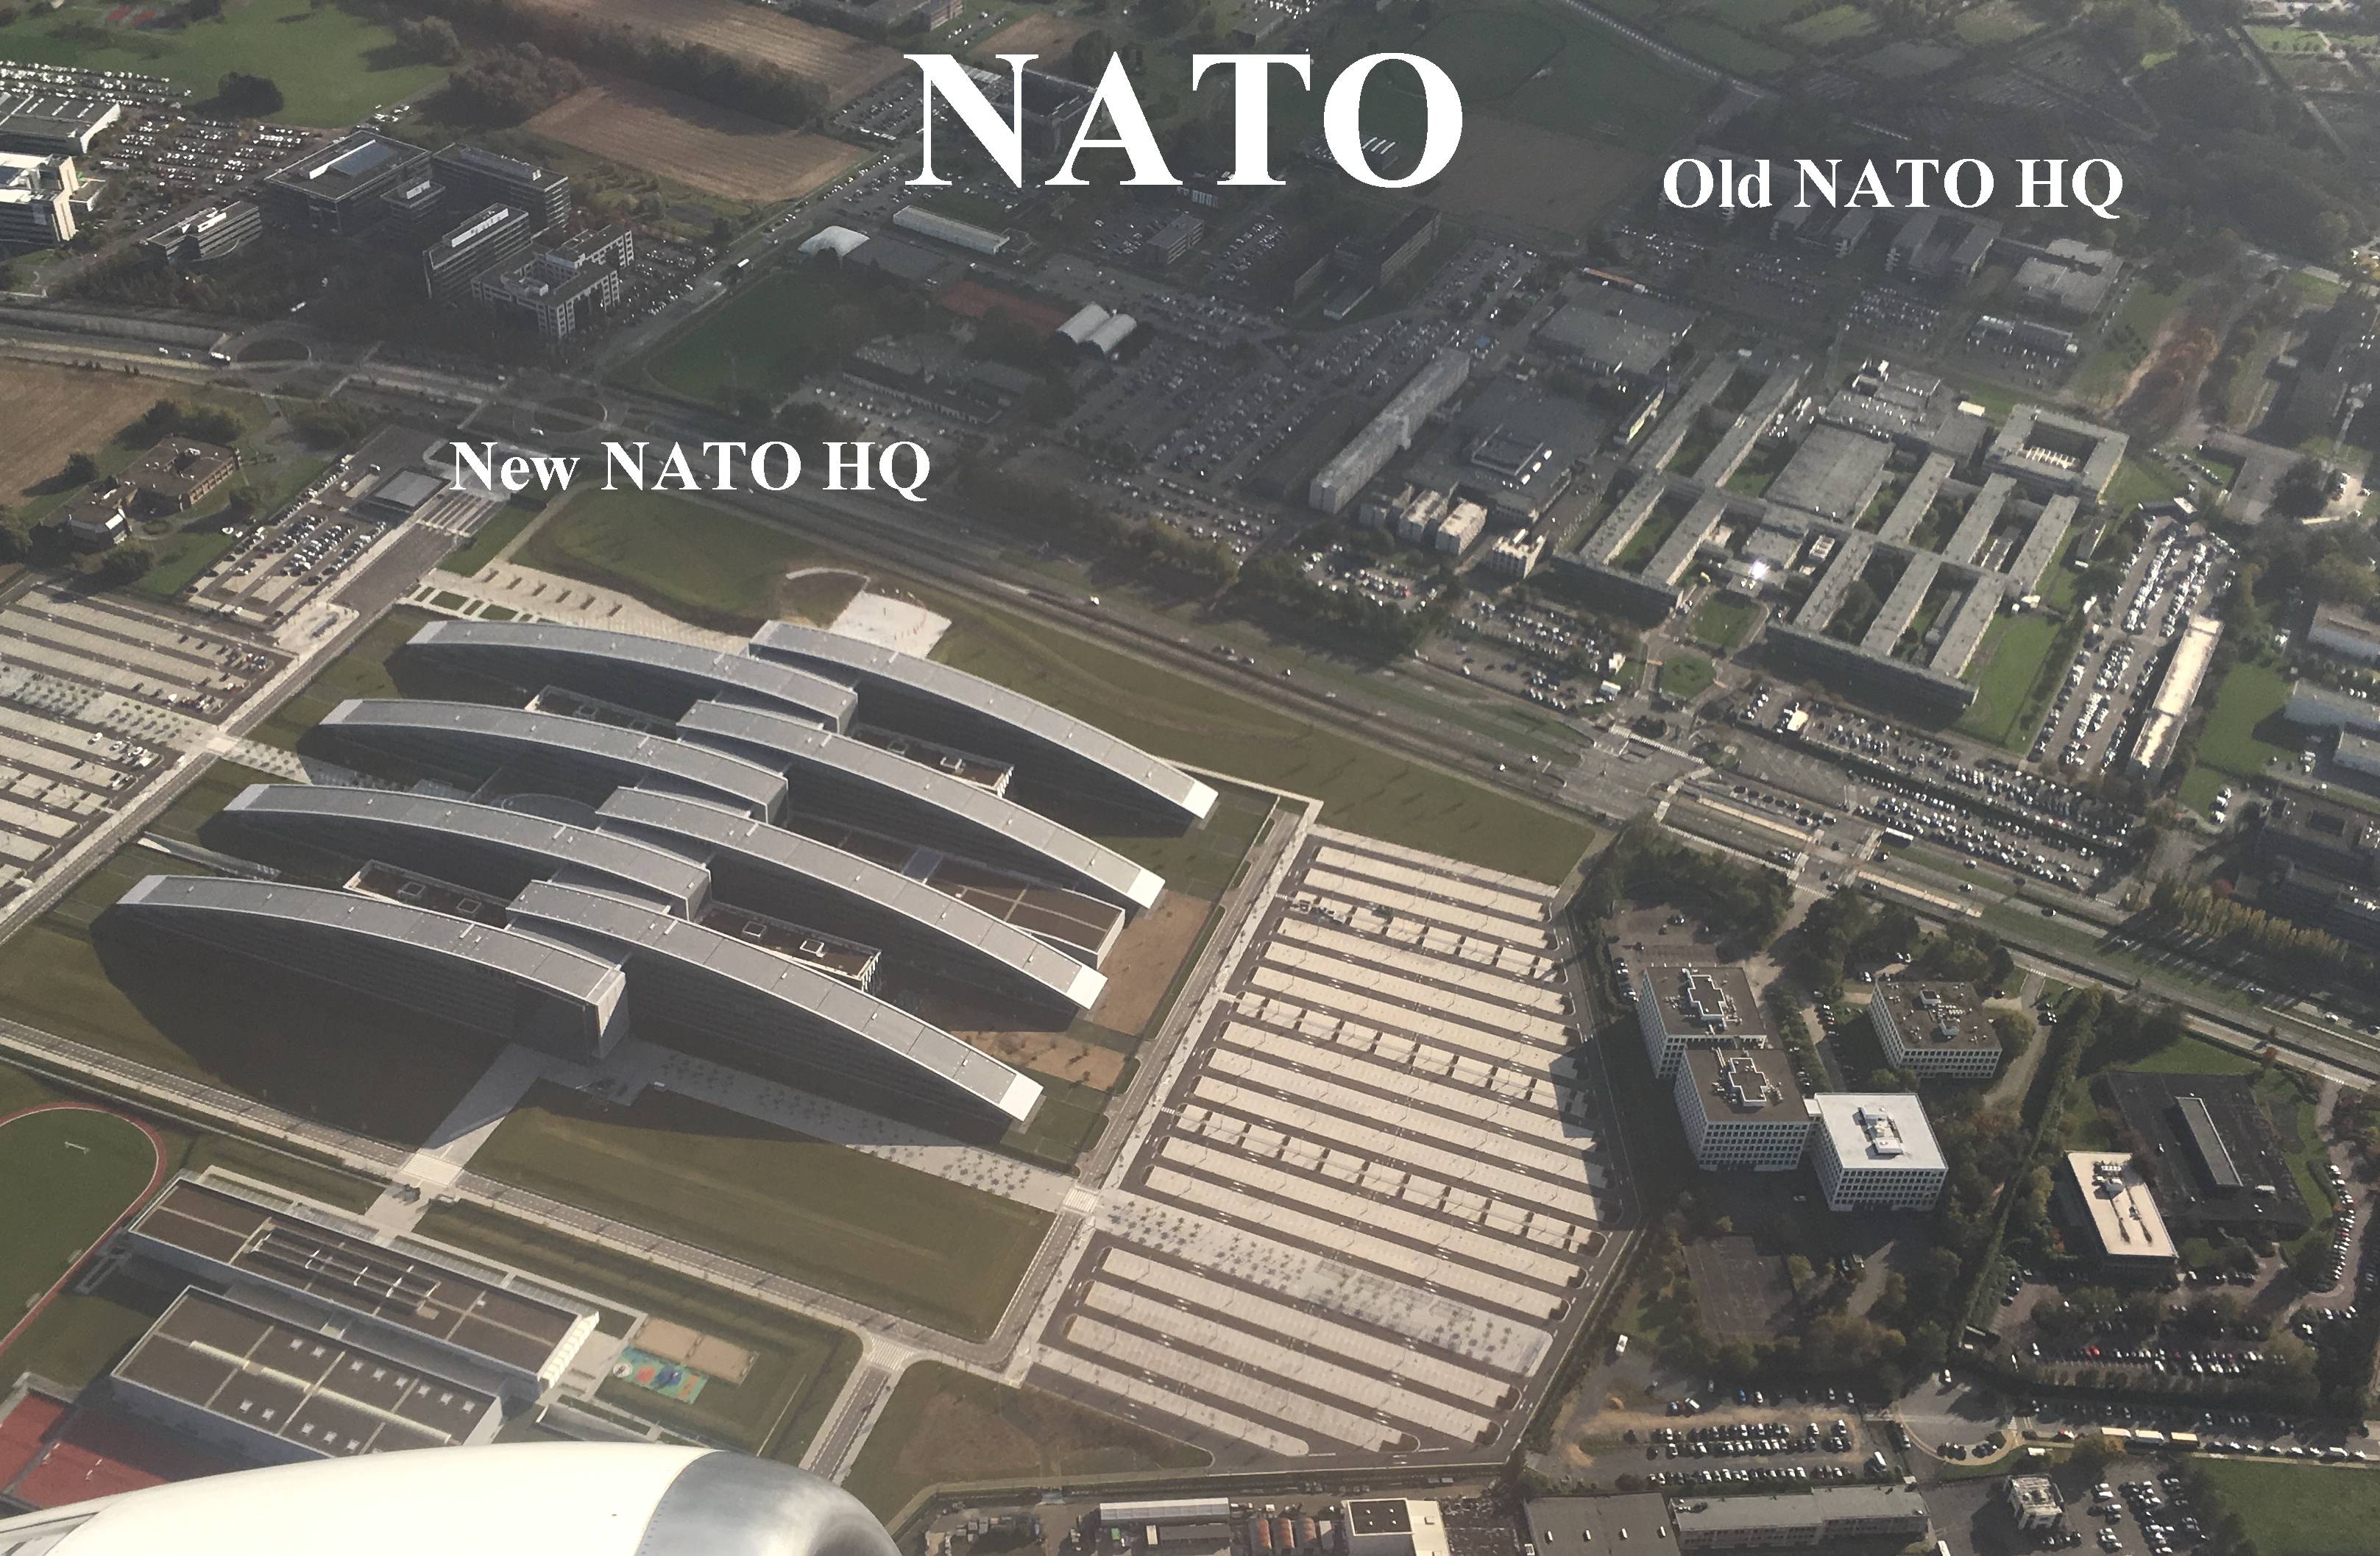 ماذا تعرف عن حلف الناتو